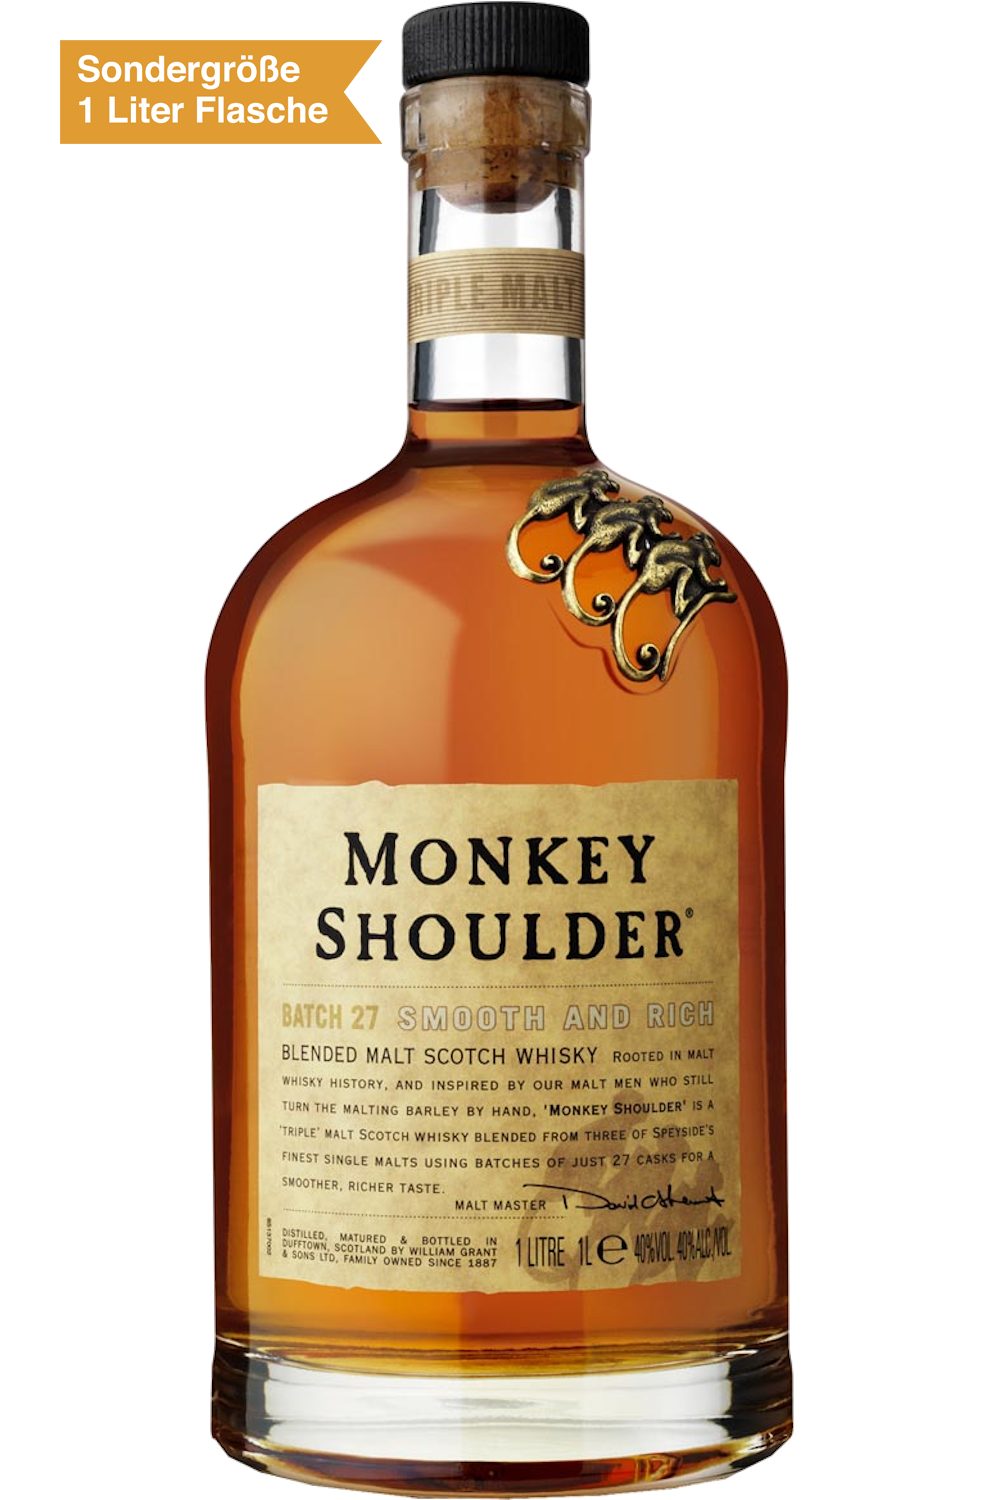 "Monkey Shoulder" Blended Malt Scotch